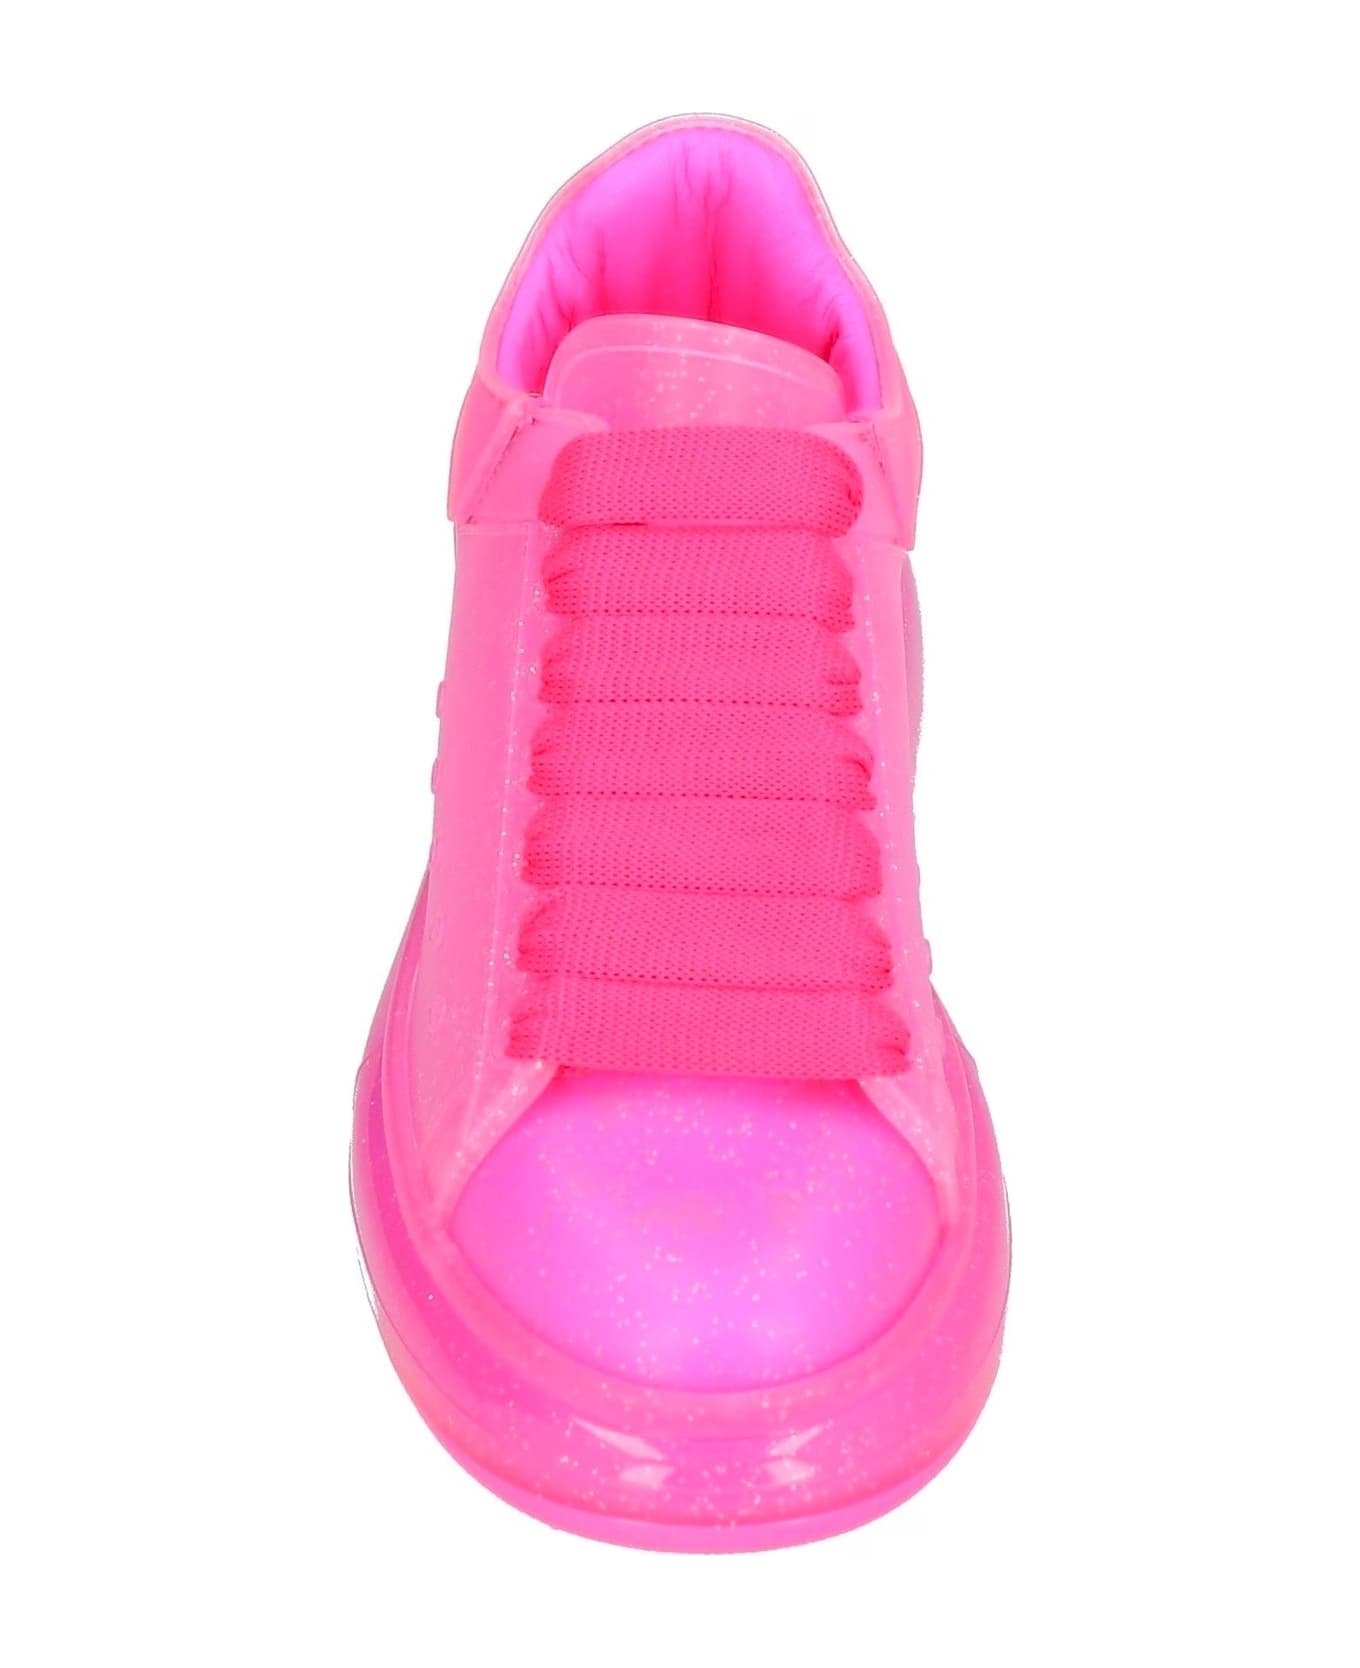 Alexander McQueen Oversized Glitter Sneakers - Pink